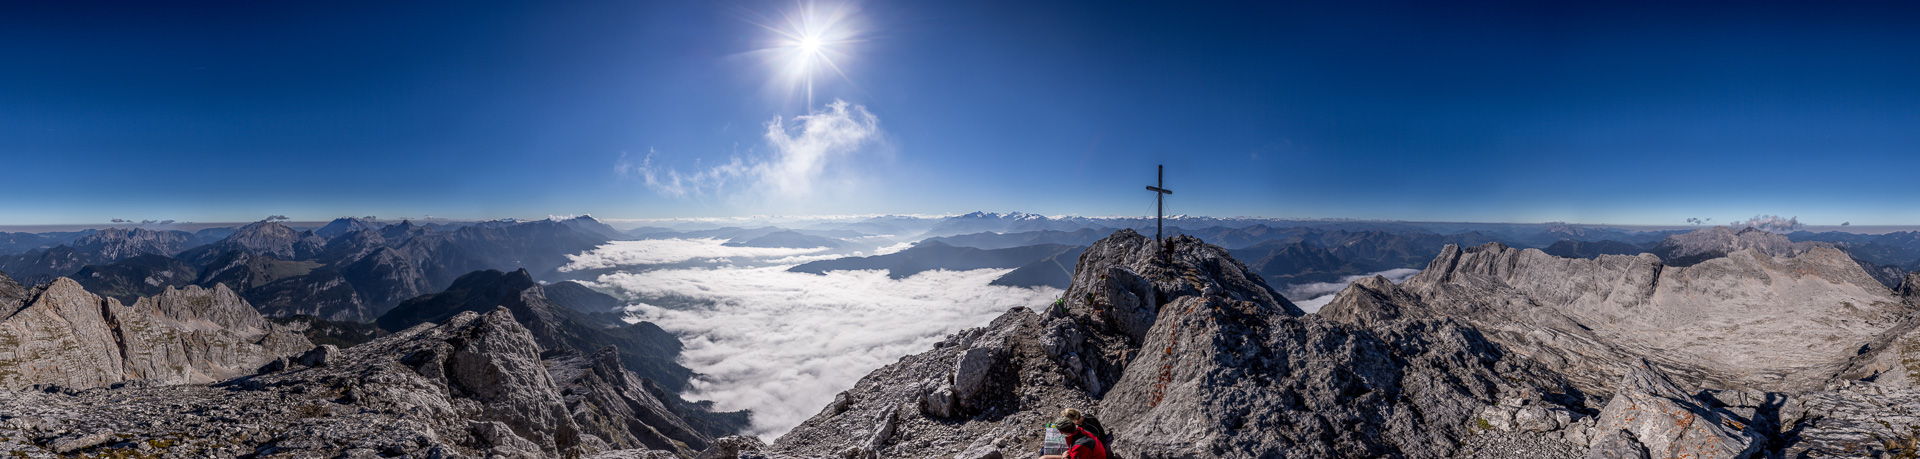 Traumhaftes Gipfelpanorama mit Blick über den ganzen Alpenhauptkamm, den Kaiser und die Berchtesgadener Alpen.